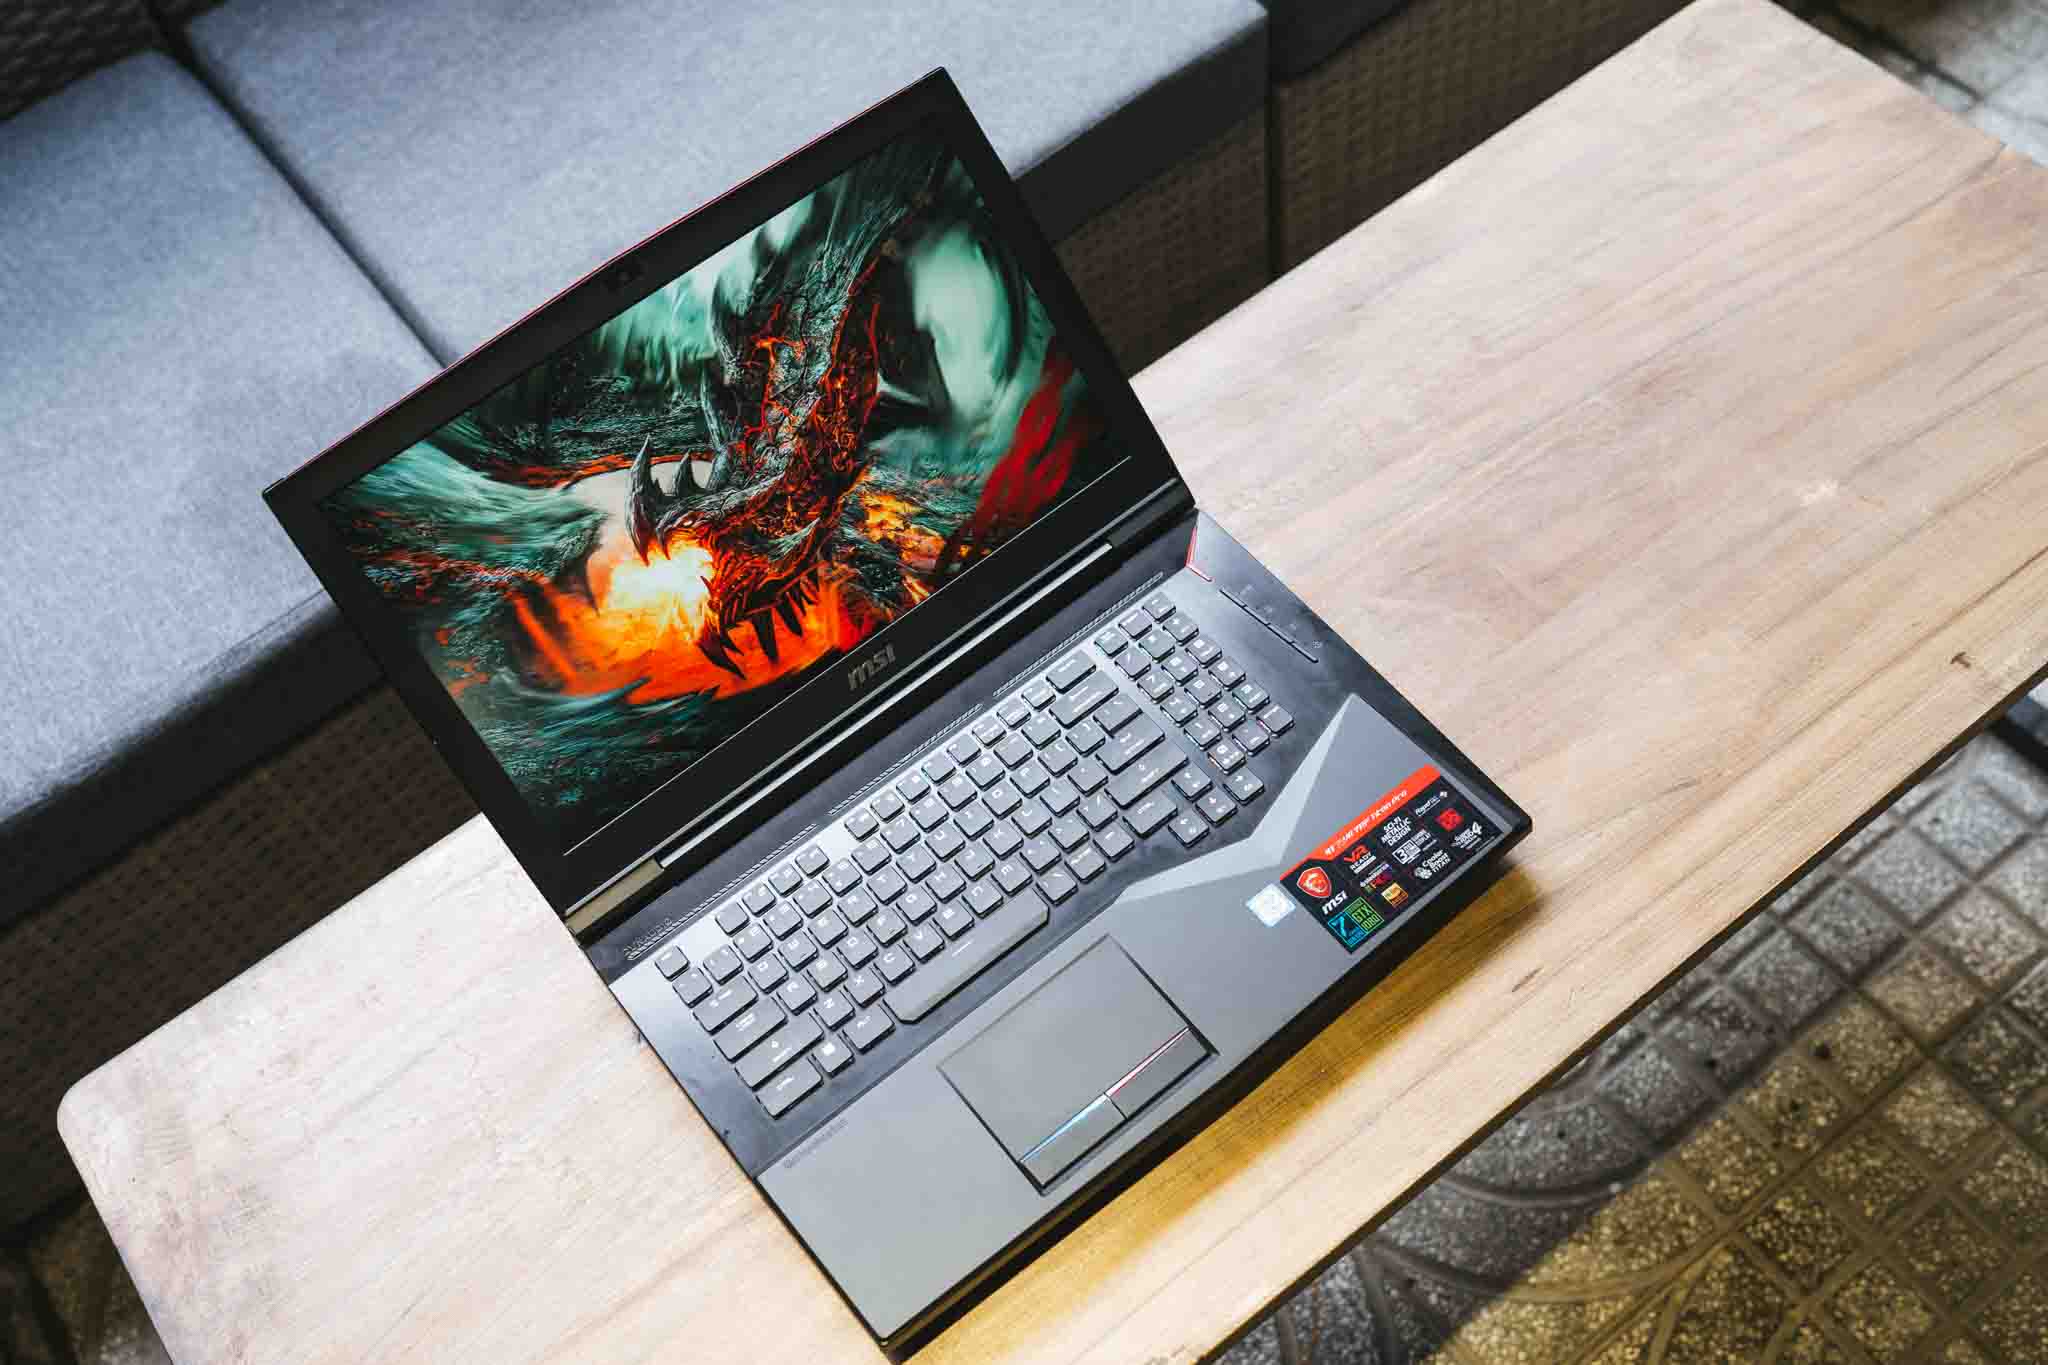 Cảm nhận về MSI GT75VR Titan Pro: 3 điểm tạo sự khác biệt cho chiếc laptop chơi game 90 triệu đồng [HOT]